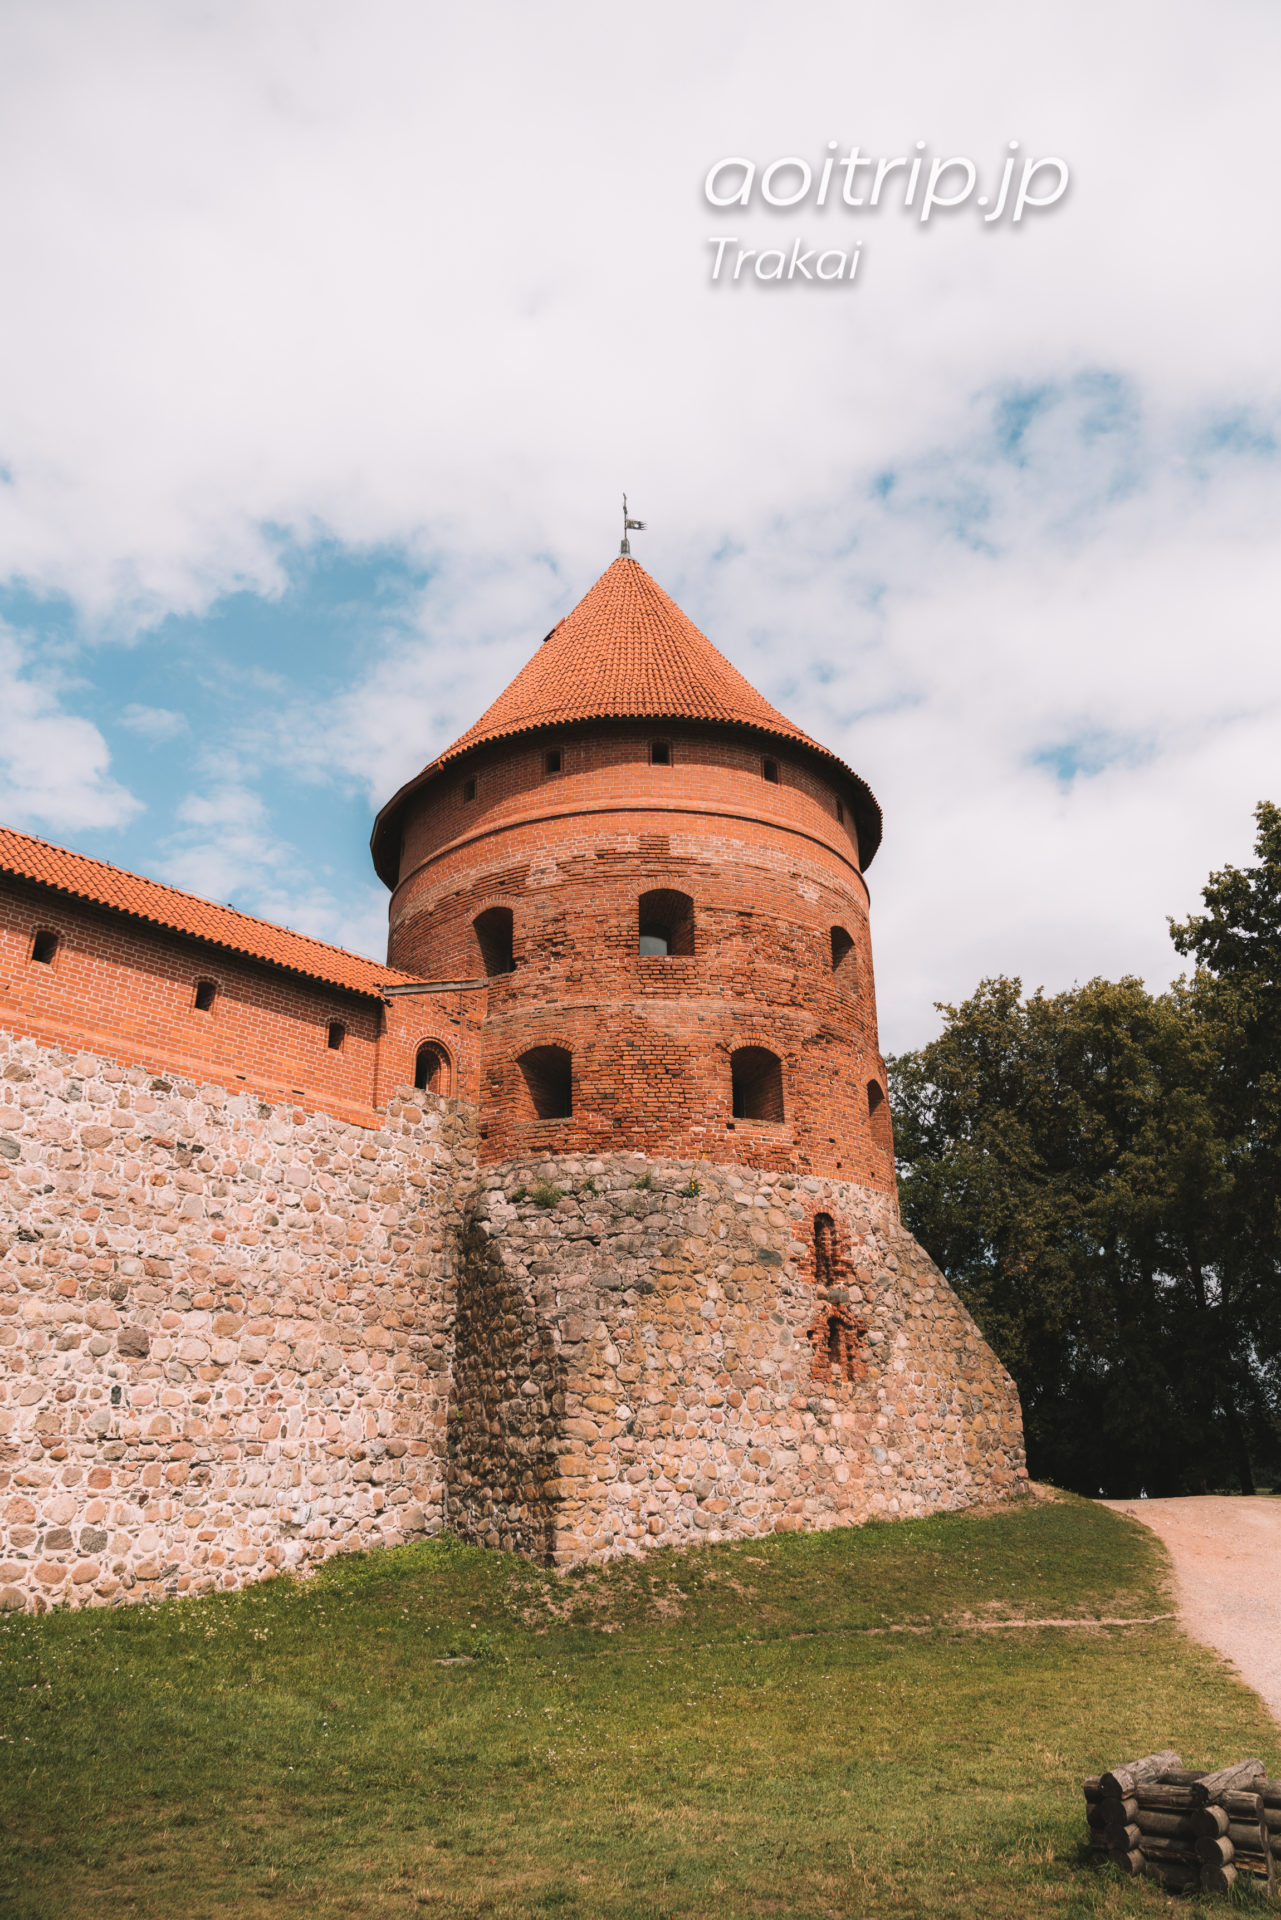 トゥラカイ城 Trakų salos pilis